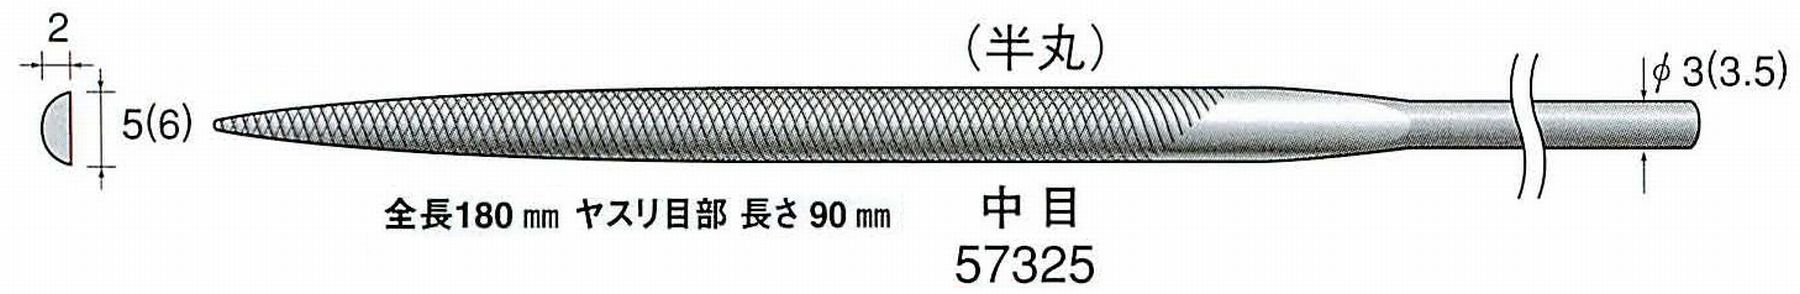 ナカニシ/NAKANISHI 精密仕上げヤスリ 半丸 中目 軸径(シャンク)φ3.0mm(3.5) 57325